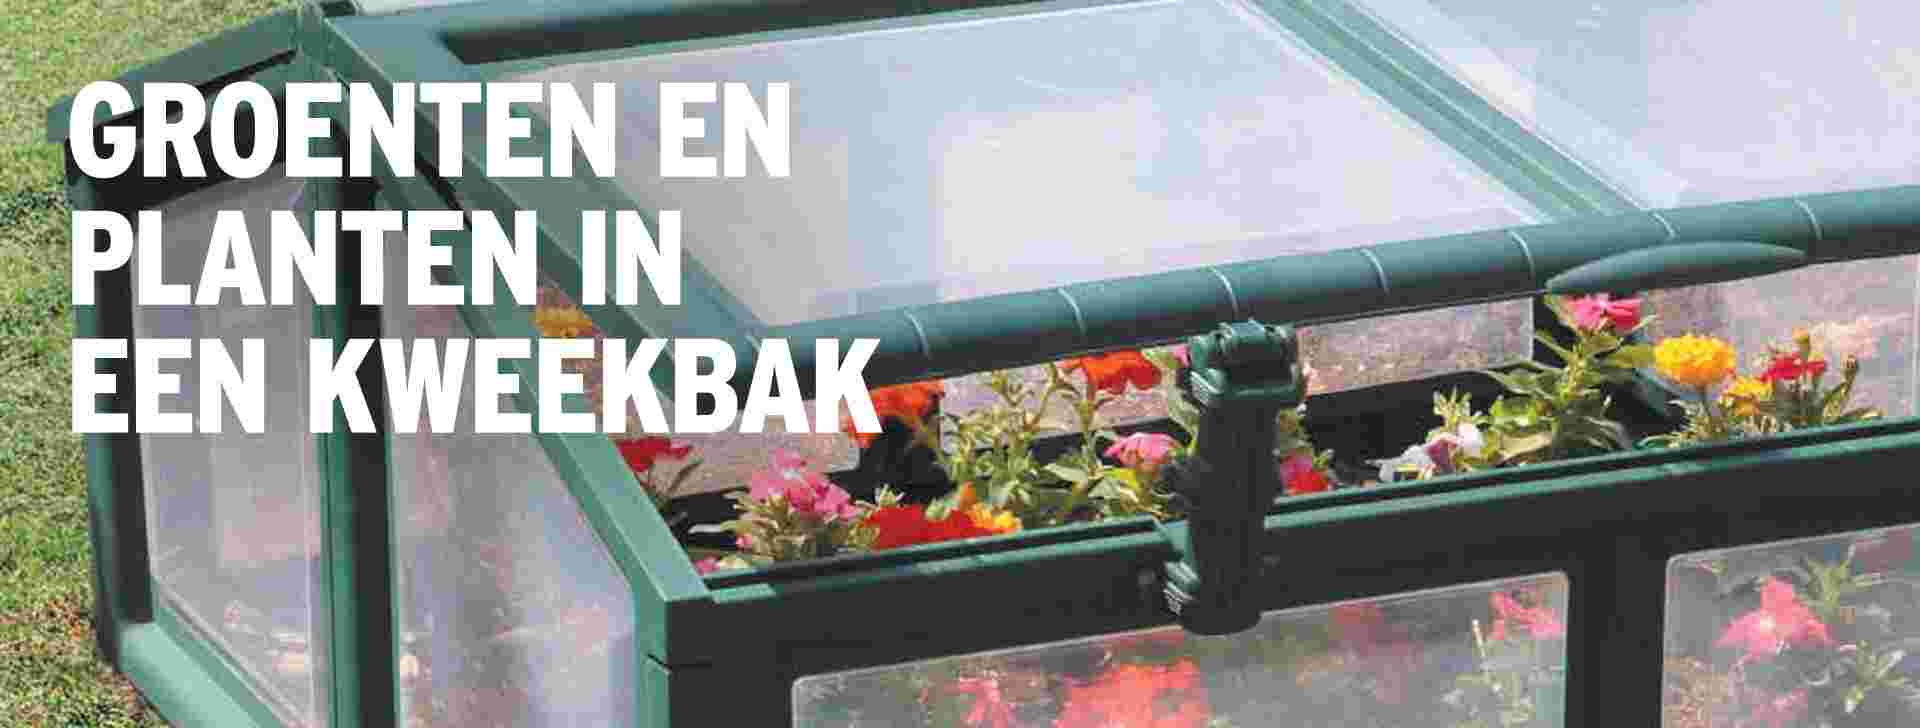 apotheker Kust En team Groenten en planten kweken in een kweekbak? | GAMMA